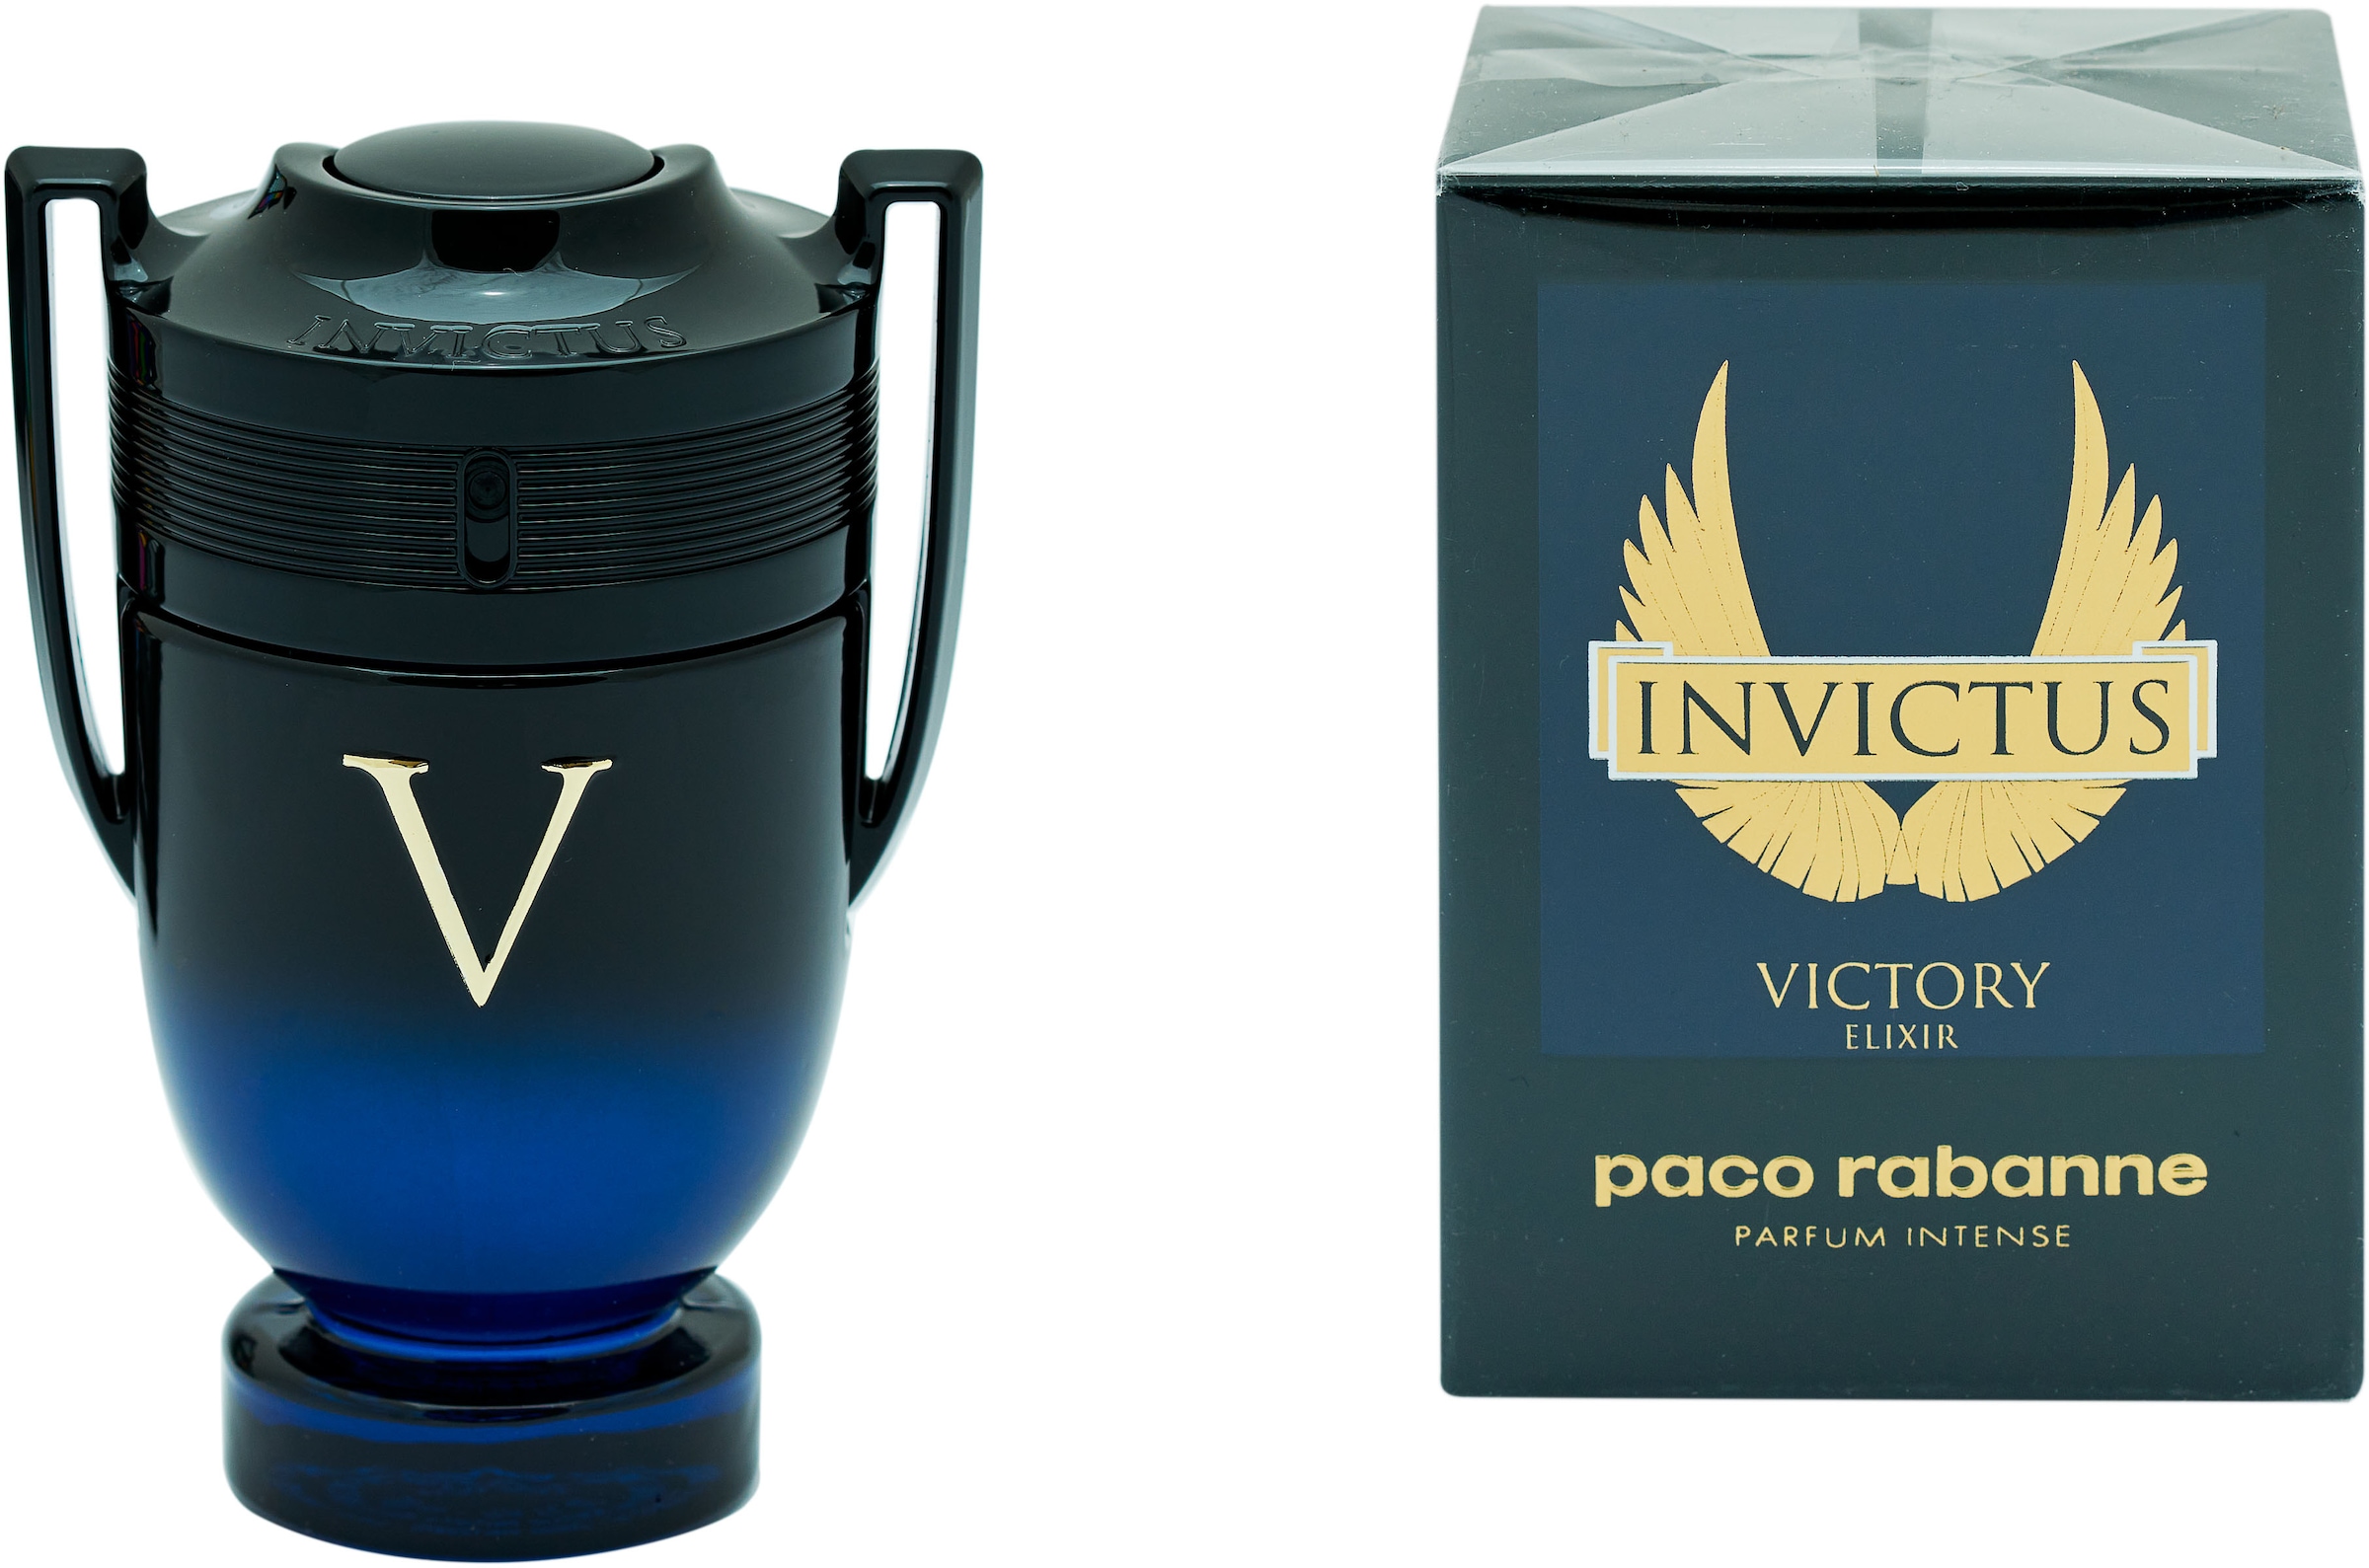 paco rabanne Extrait Parfum »Invictus Victory Elixi...